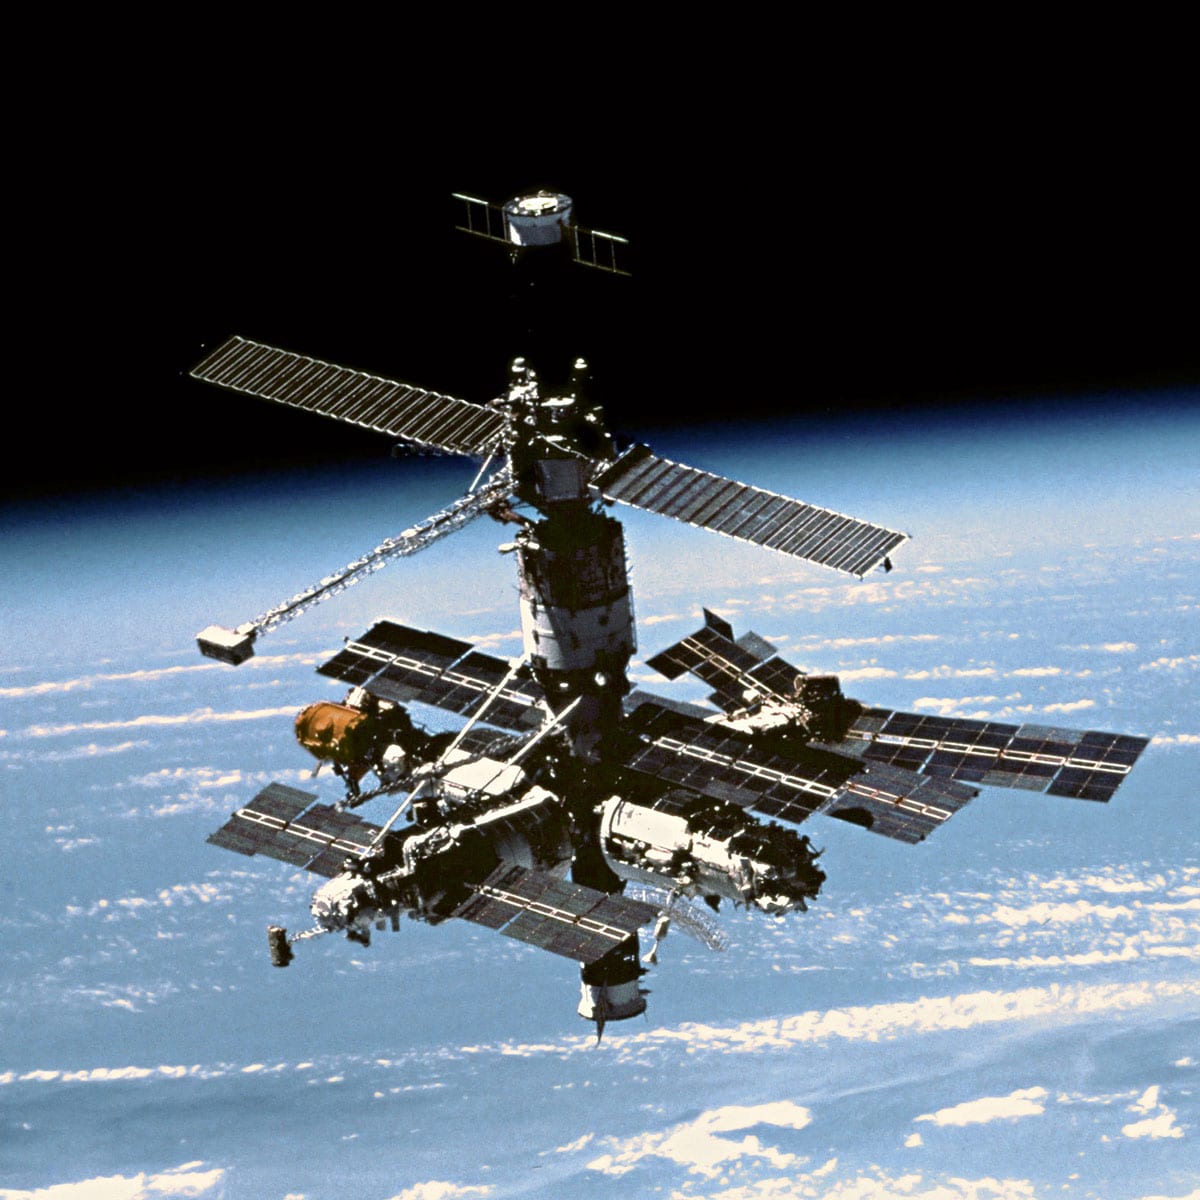 La stazione spaziale russa Mir